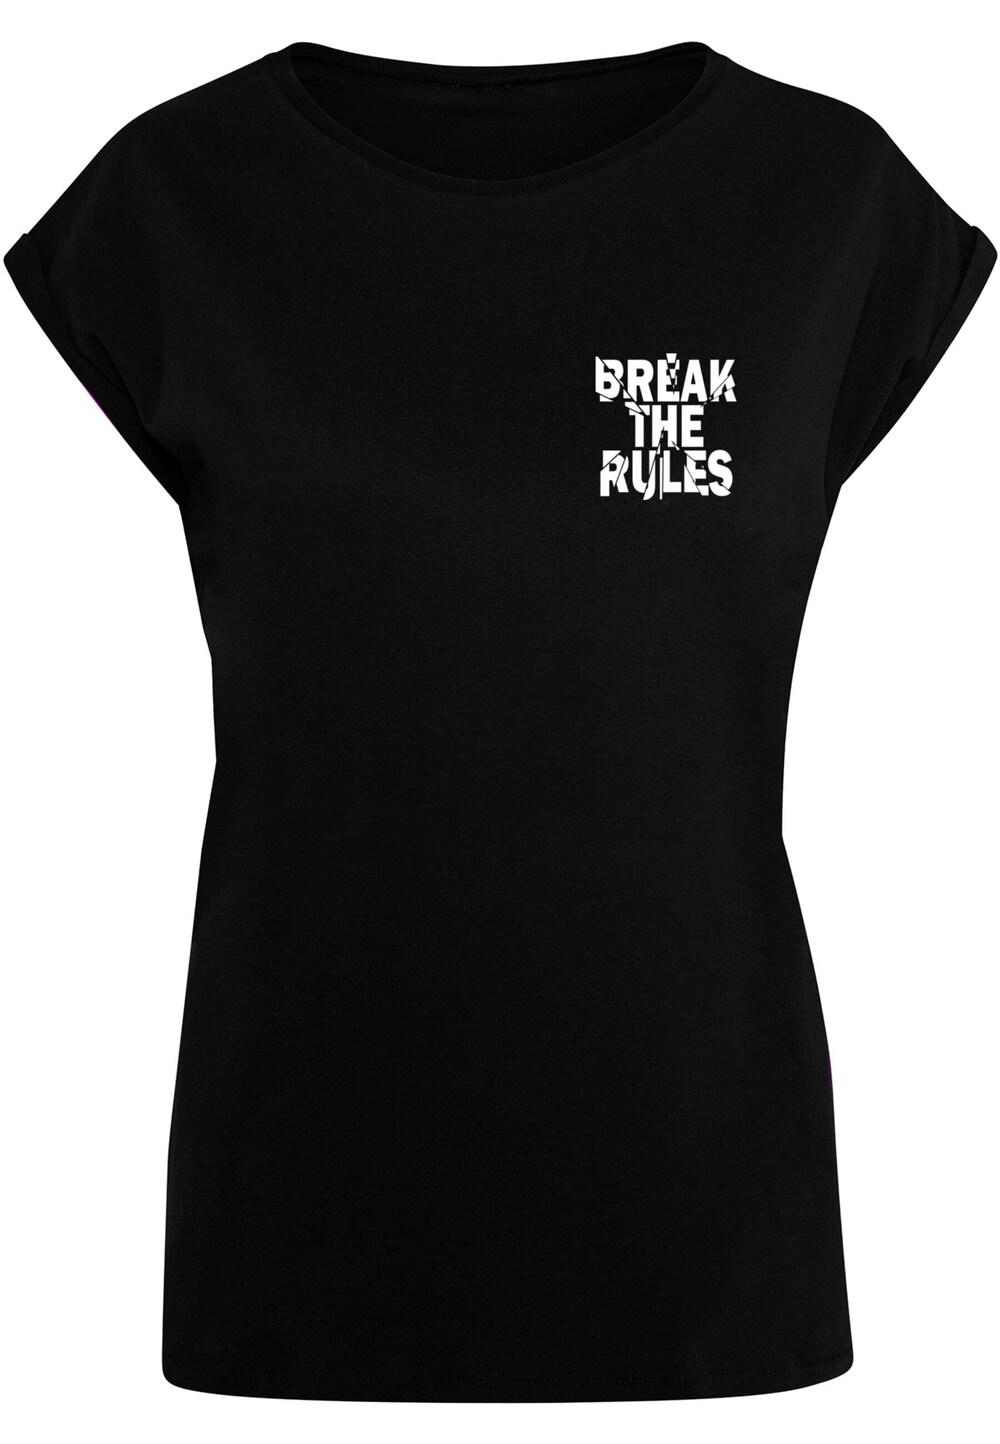 Рубашка Merchcode Break The Rules 2, черный рюкзак grizzly школьный анатомическая спинка для мальчиков break rules 42x31x22 см ru 132 2 2